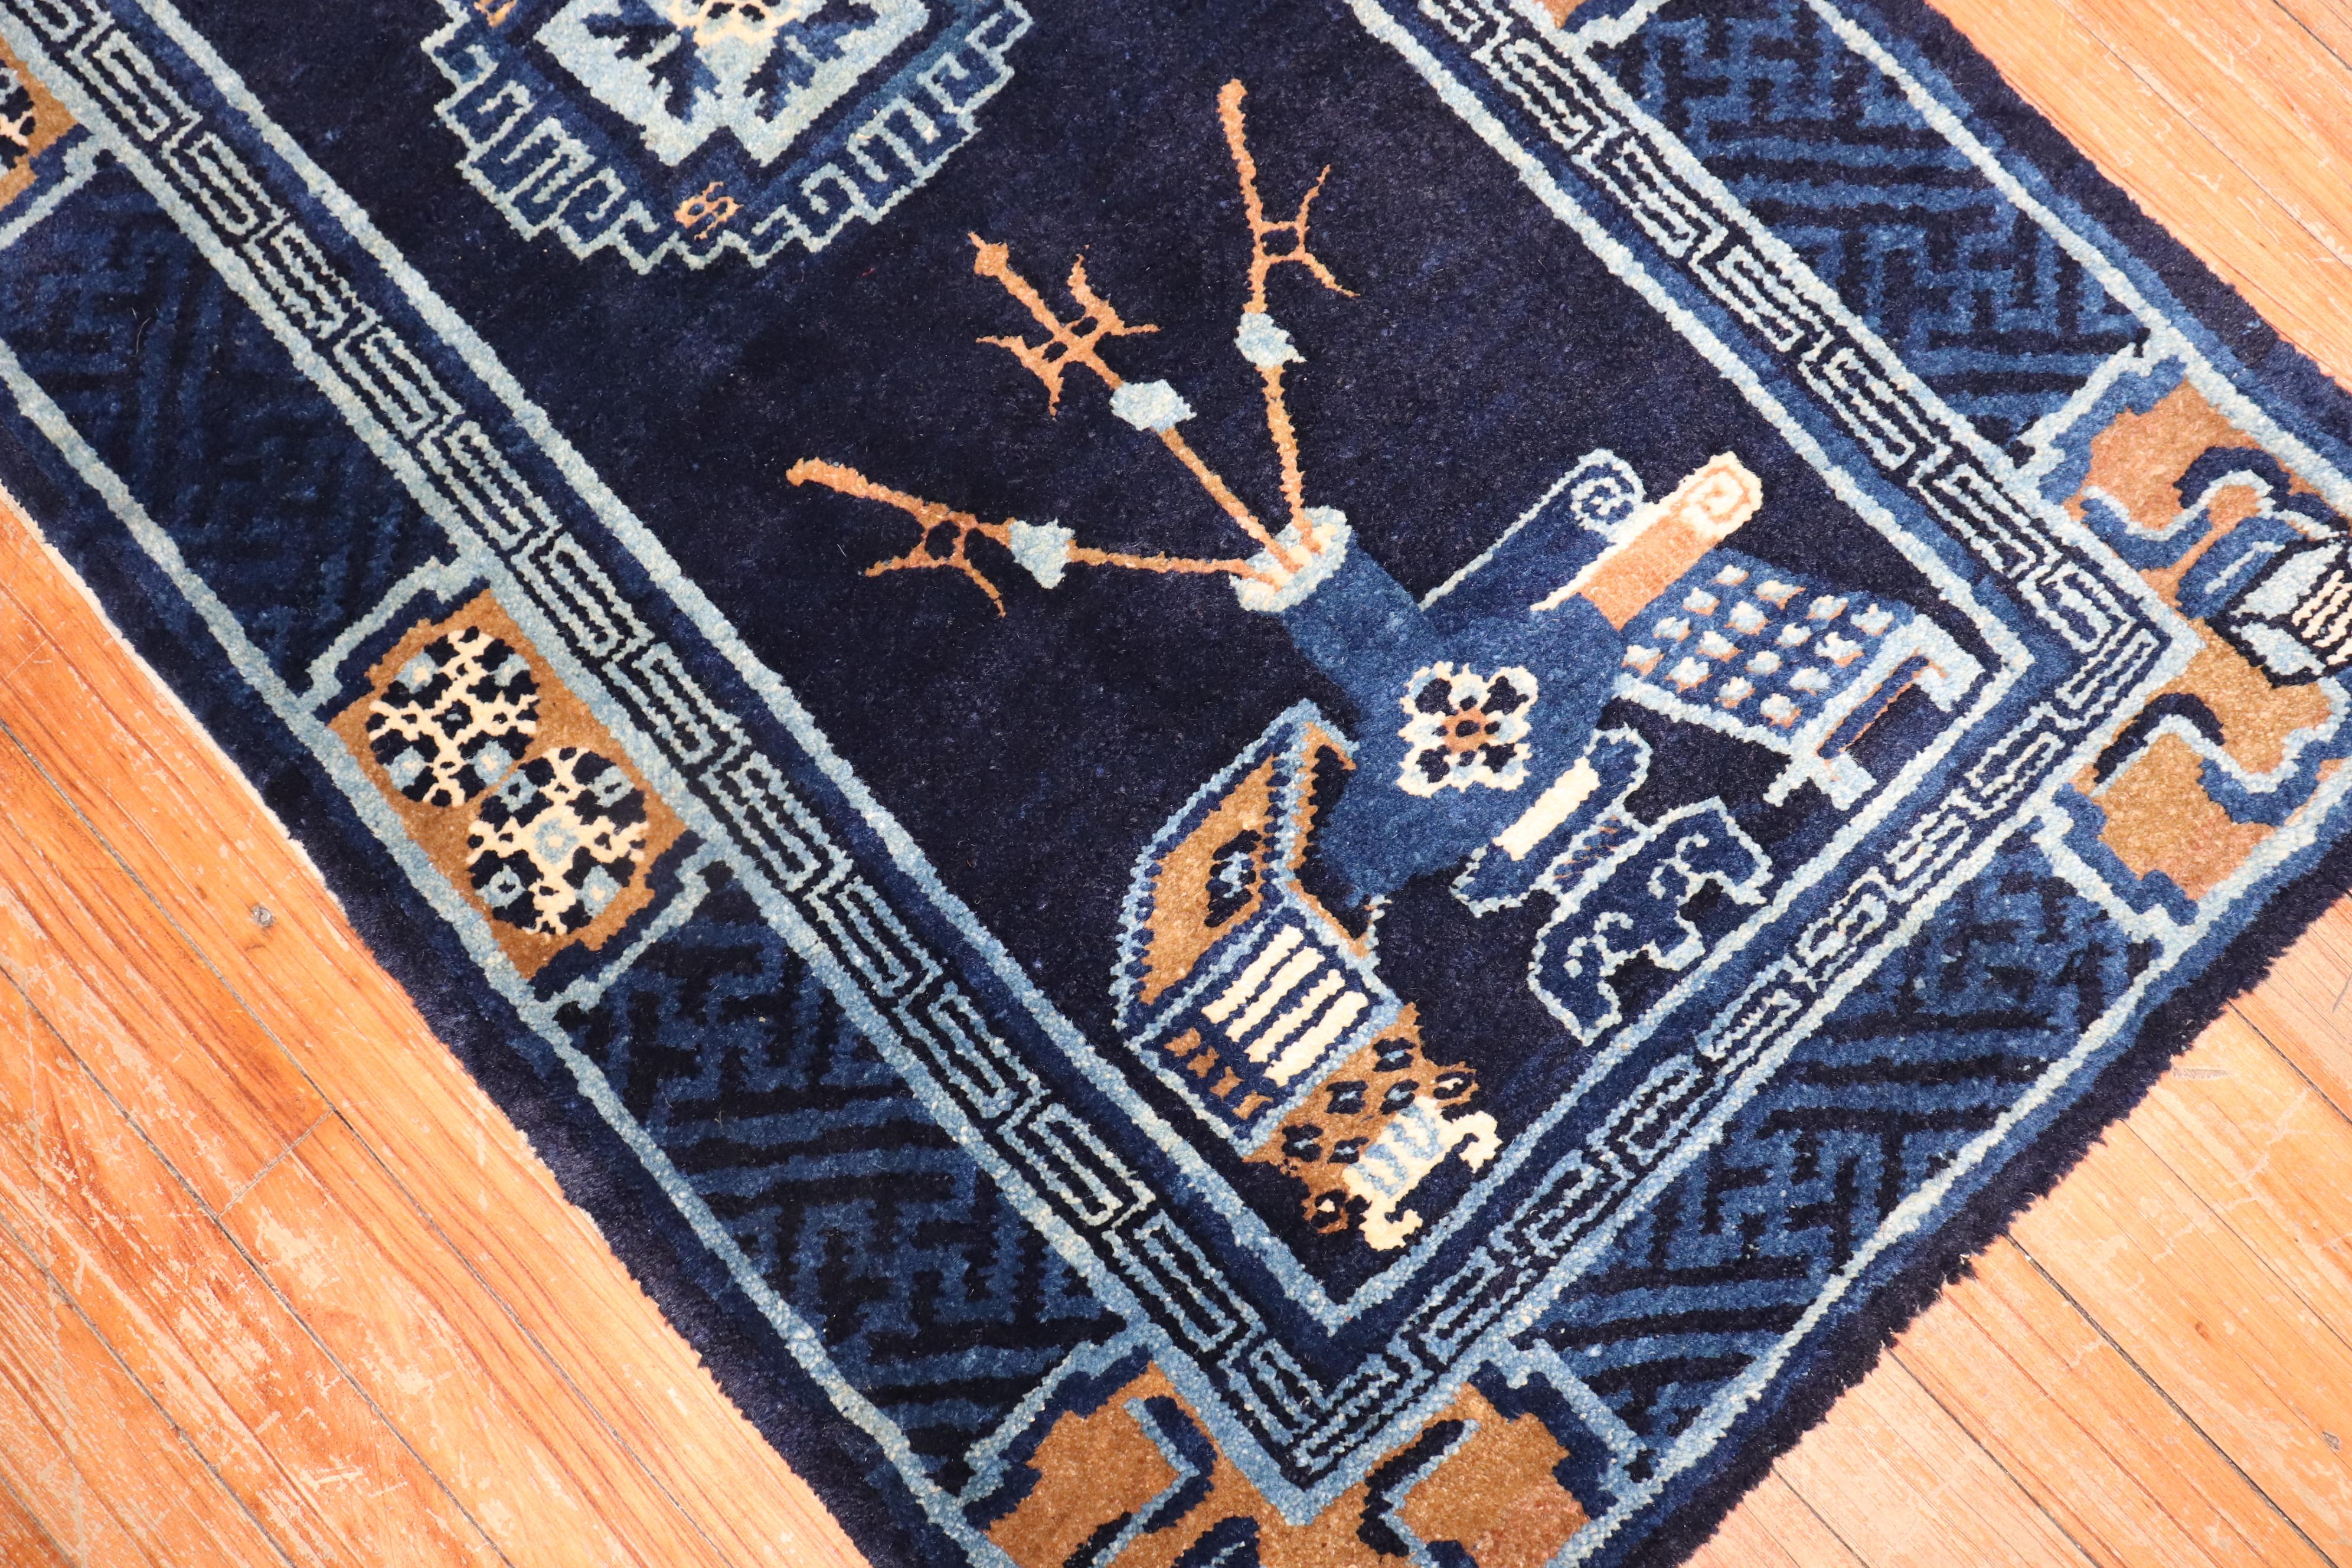 Chinesischer Peking-Teppich in Blau im Streubildformat aus dem 2. Quartal des 20. Jahrhunderts.

Maße: 2'2